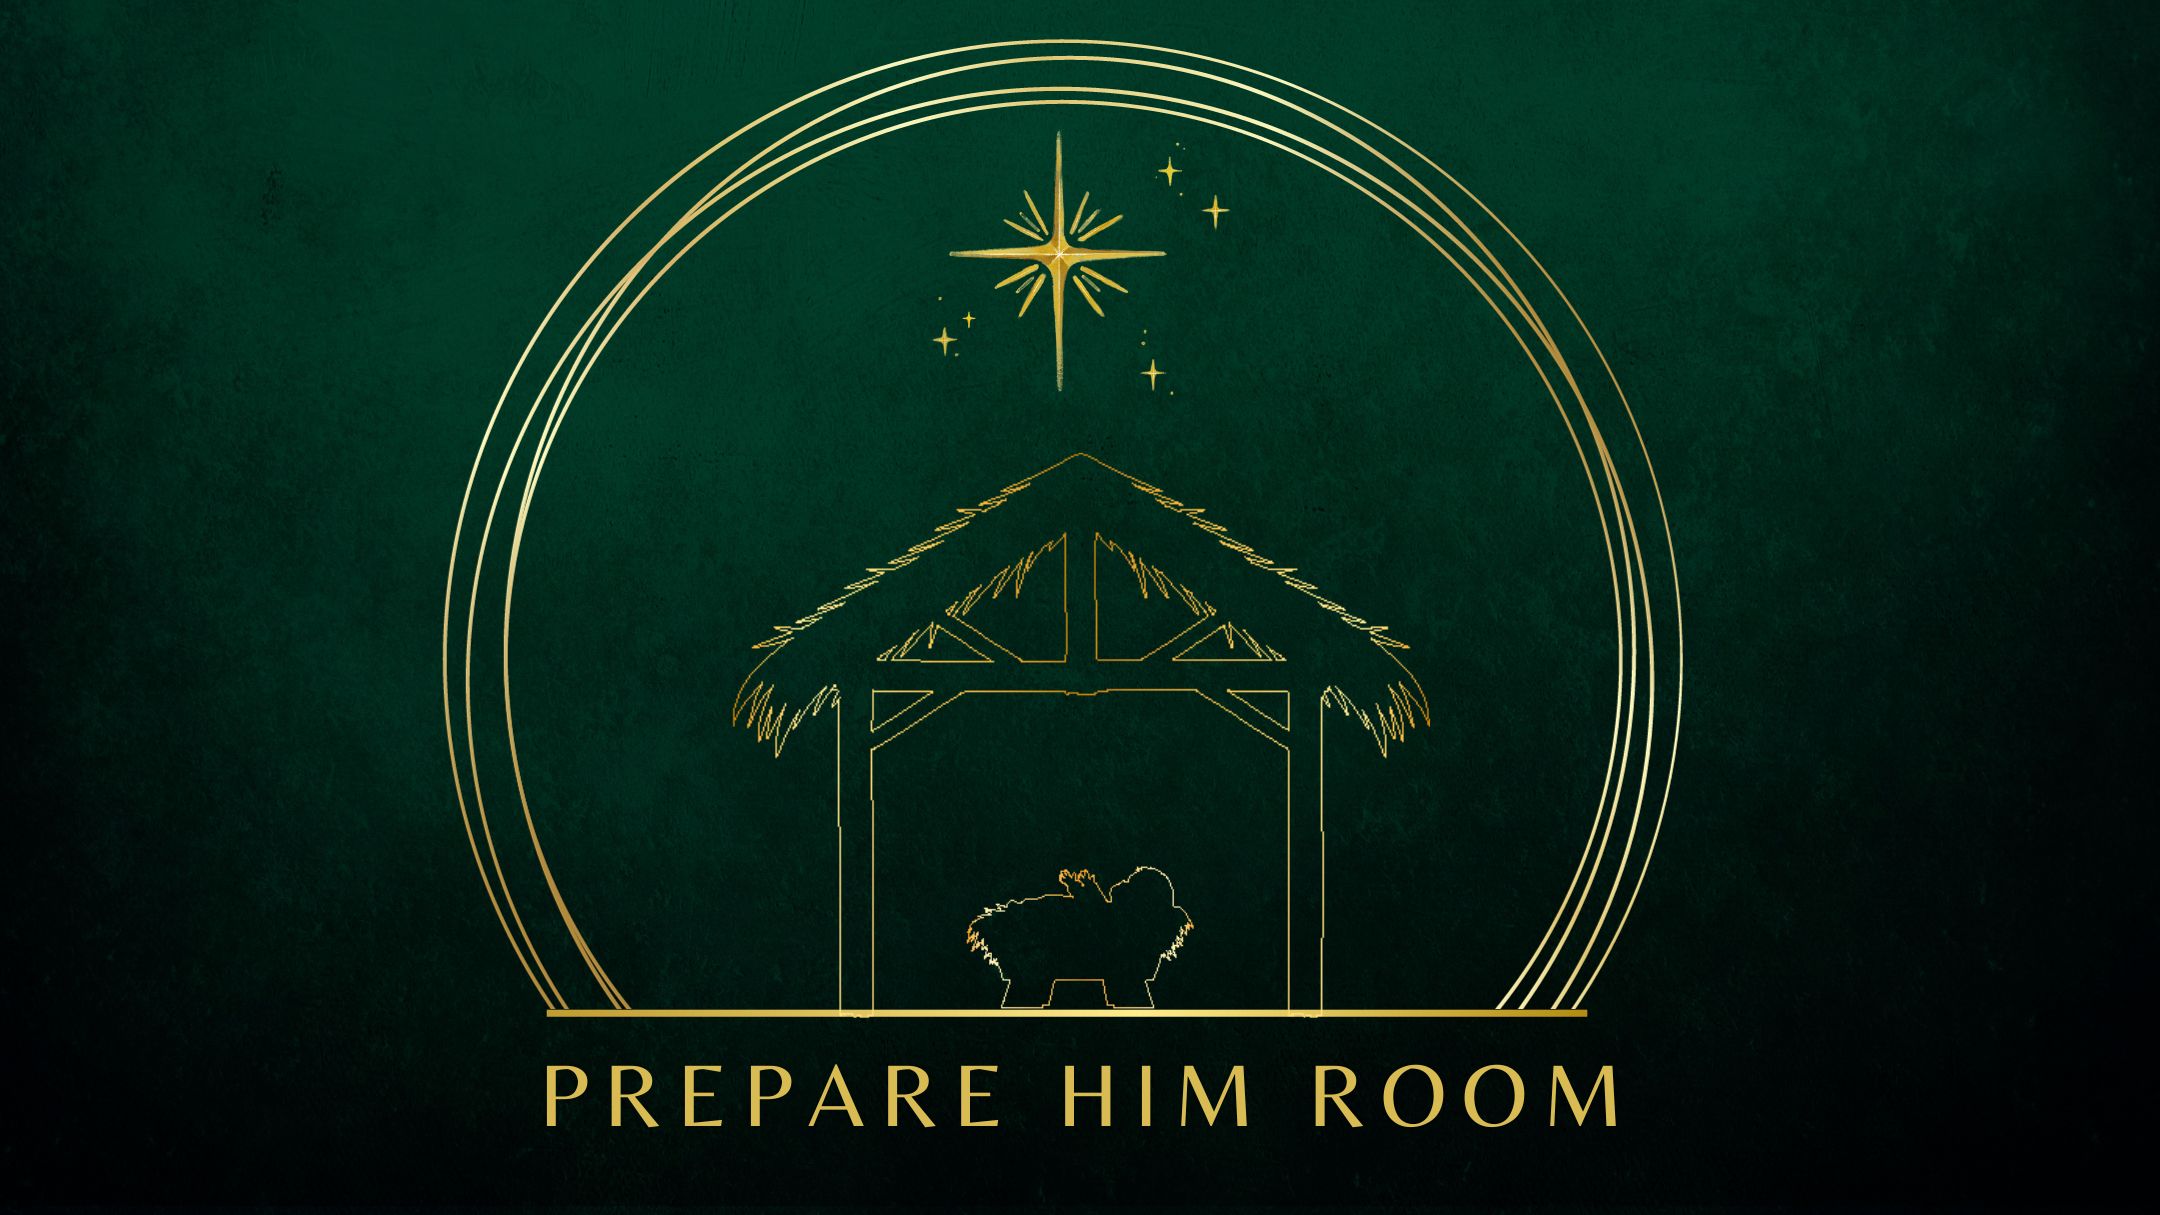 Shepherds Prepare Him Room